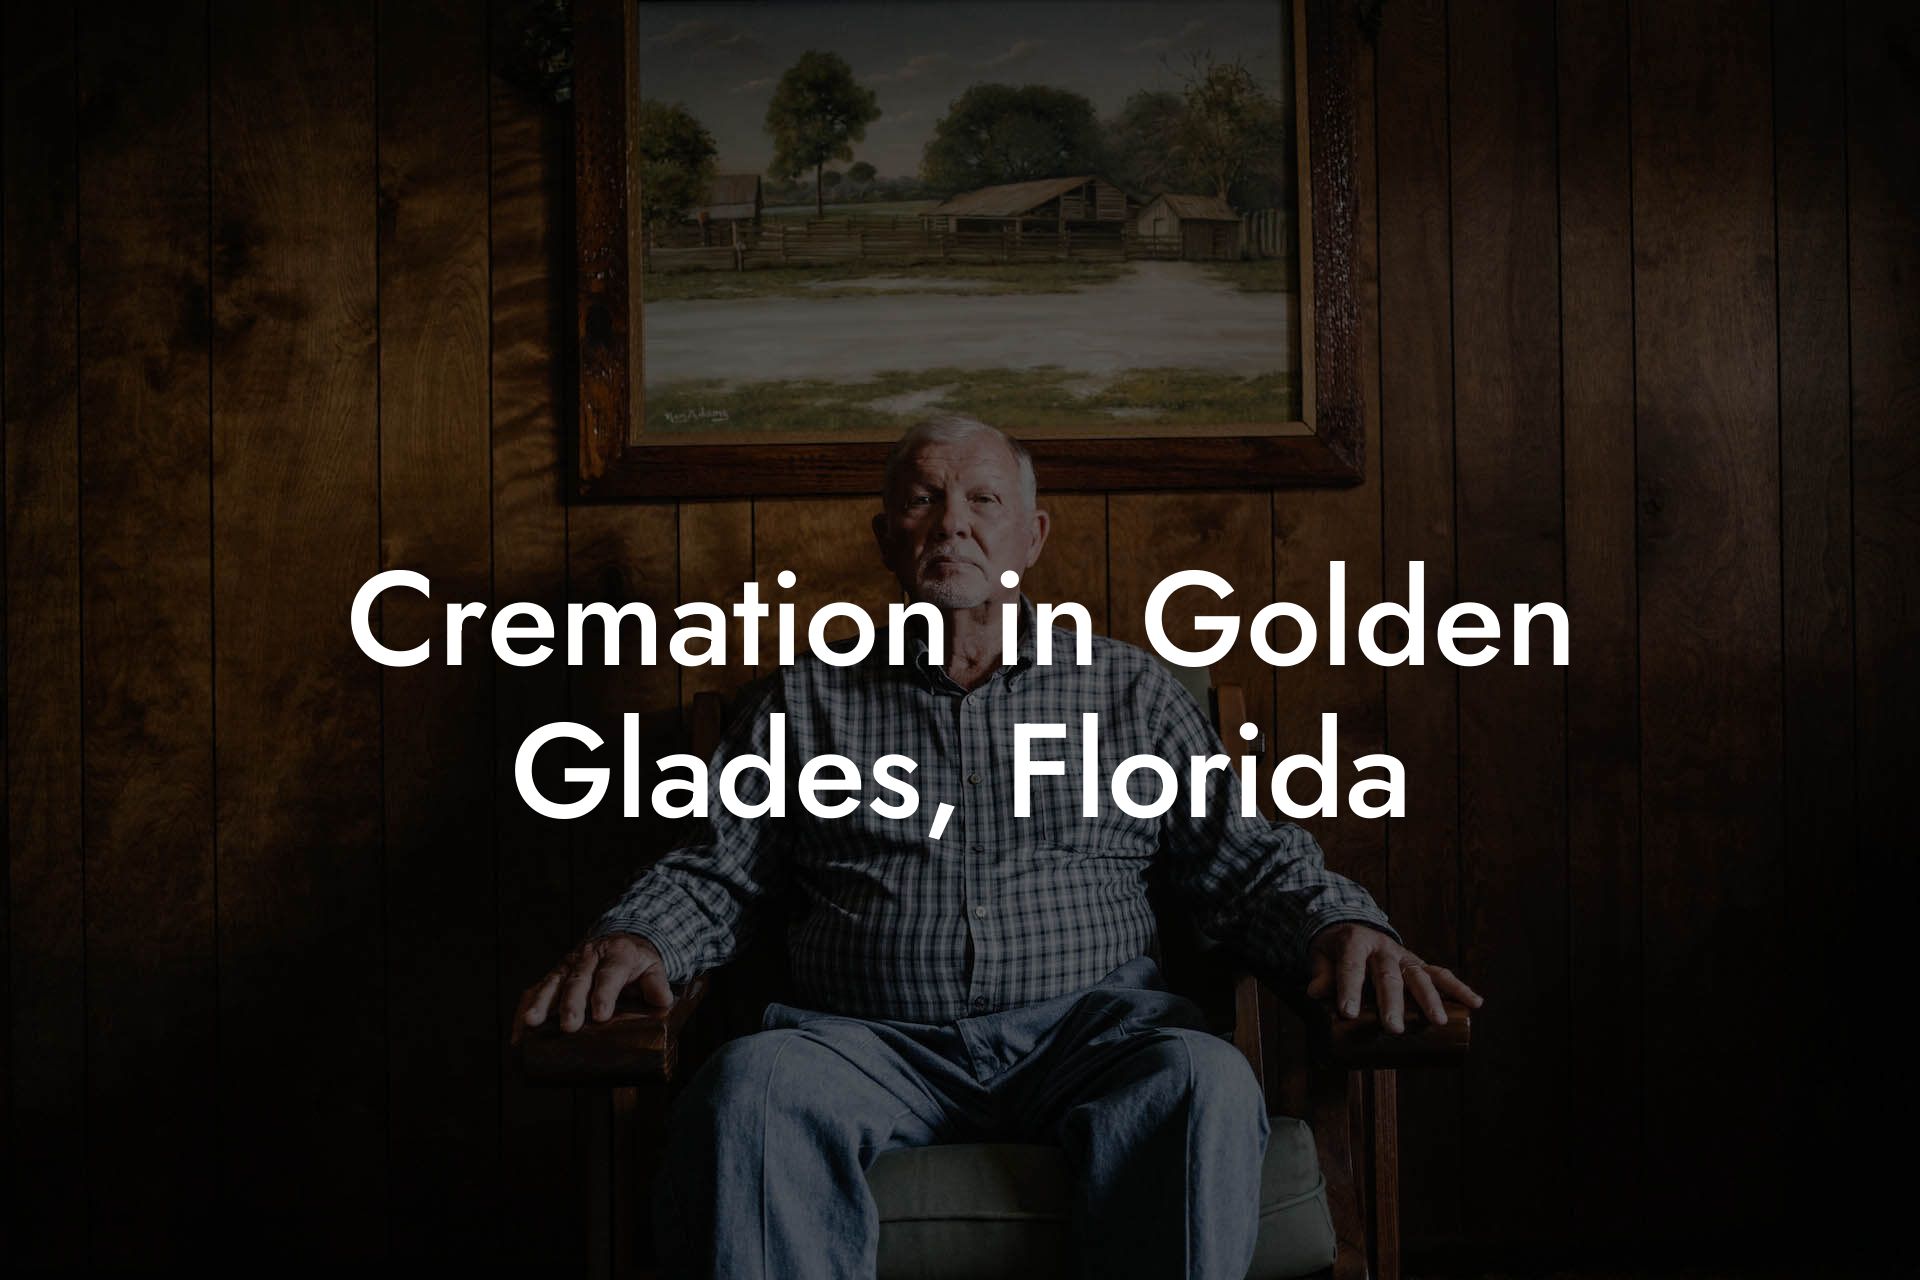 Cremation in Golden Glades, Florida